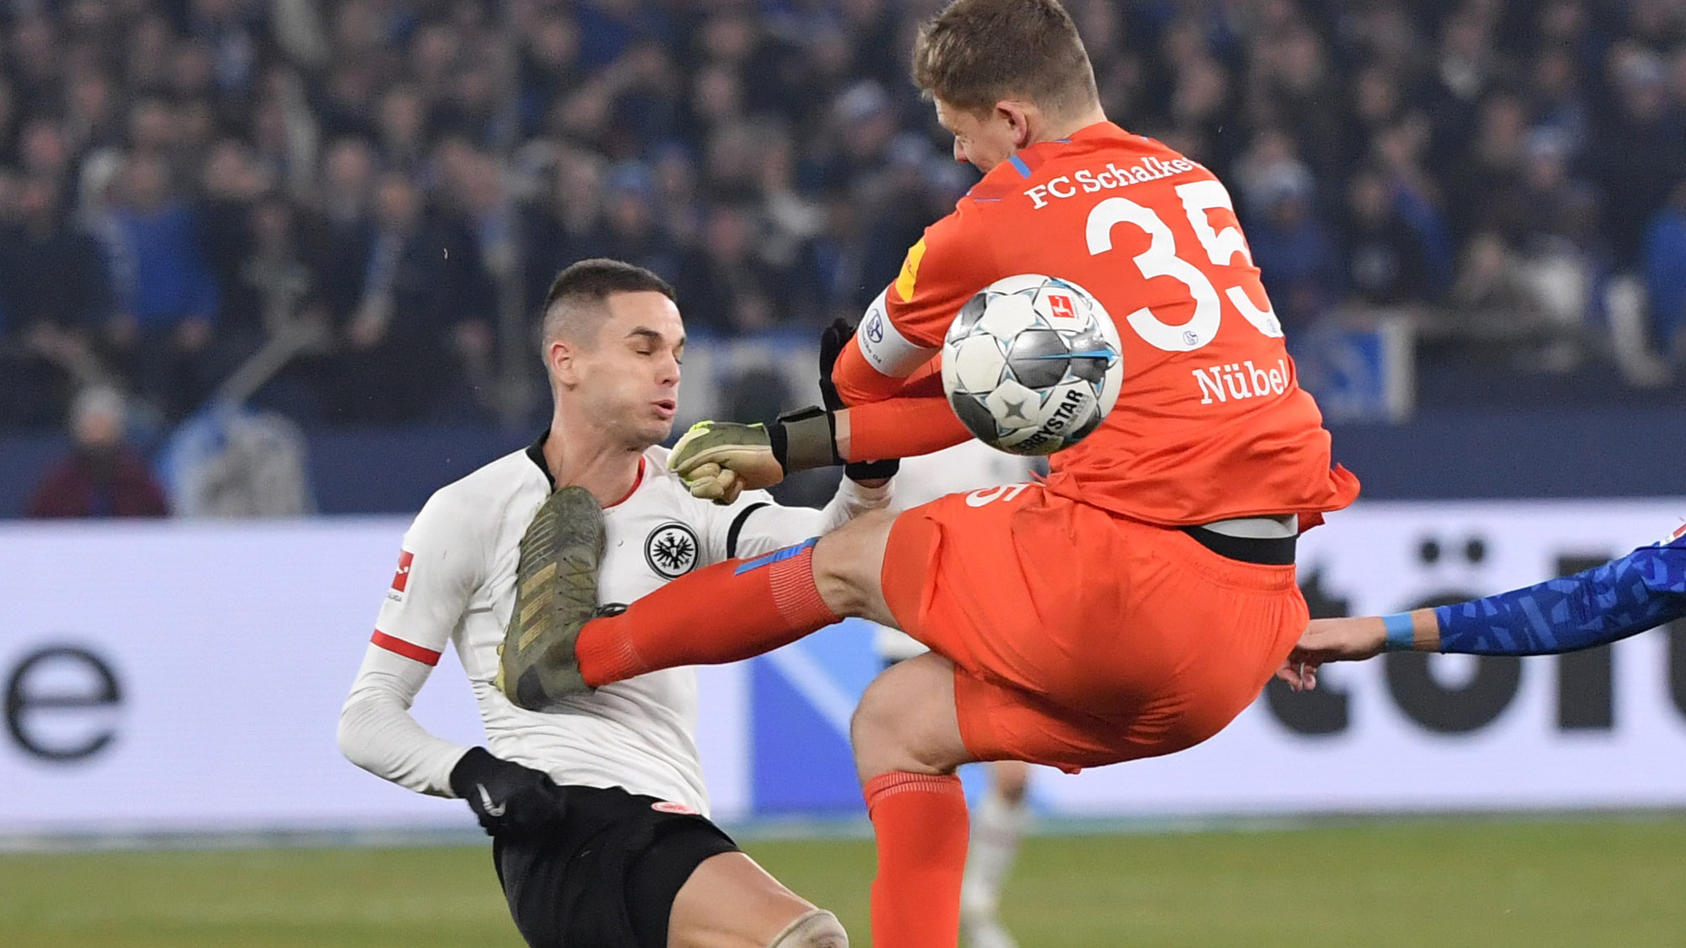 "Blut-Foul" von Alexander Nübel überschattet Schalker-Sieg